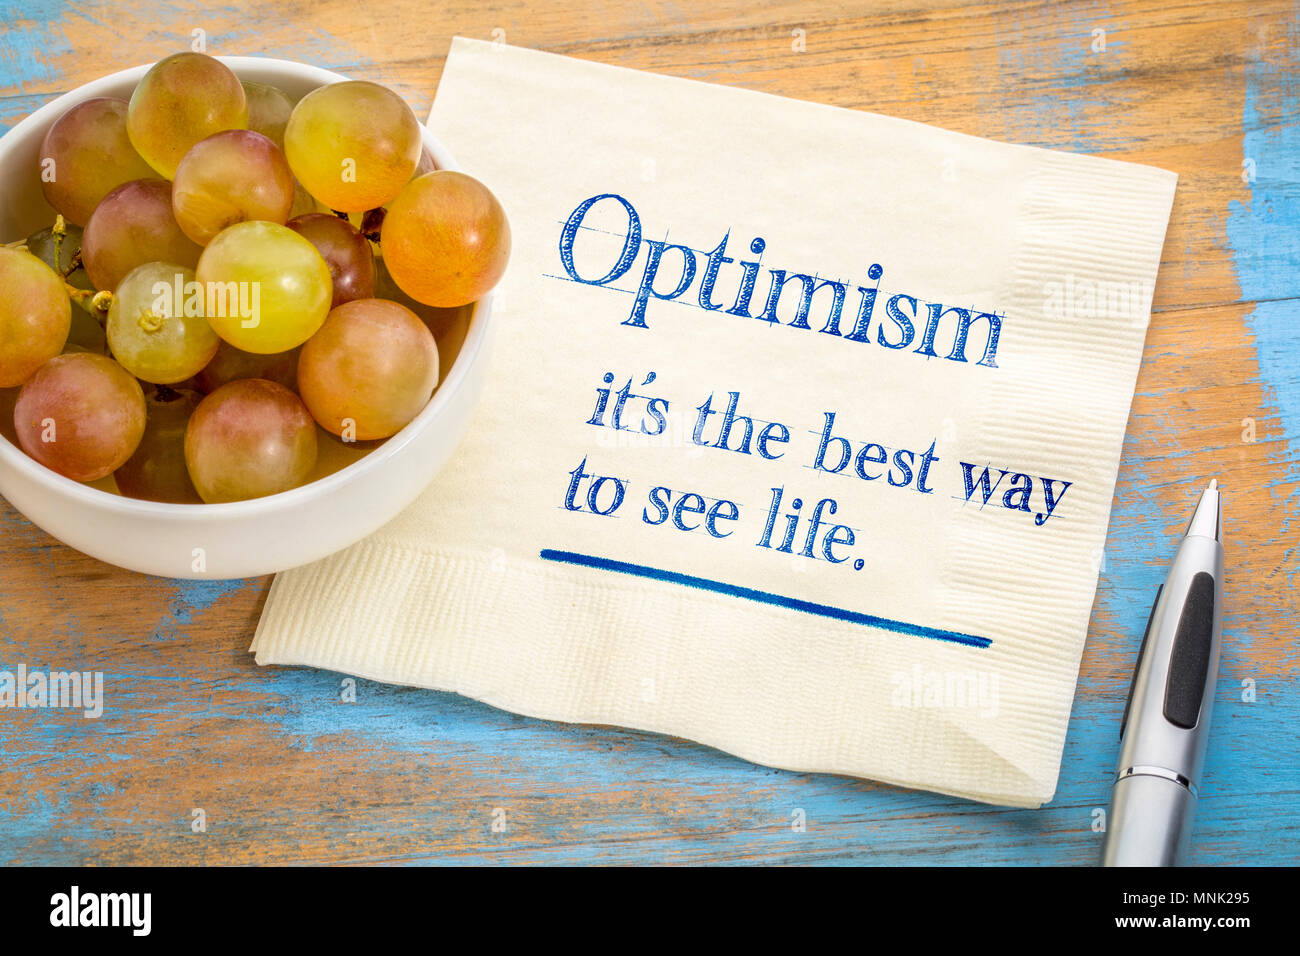 Optimisme - meilleure façon de voir la vie, l'écriture d'inspiration sur une serviette avec des raisins frais Banque D'Images